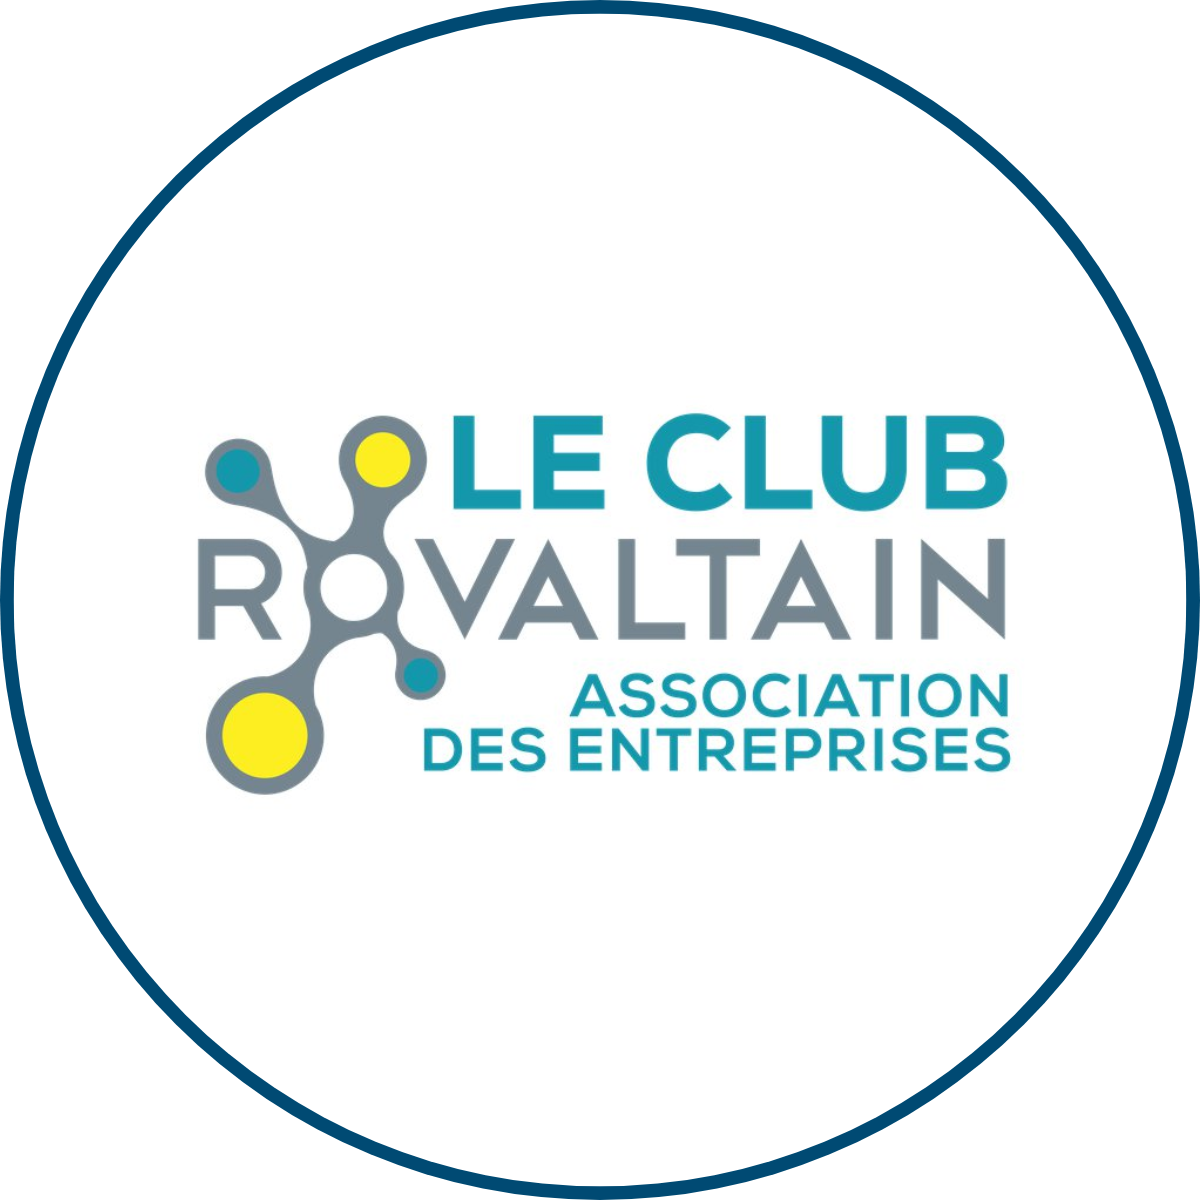 SEM IN Situ | Notre équipe | Le Club Rovaltain | Partenaires | Espaces Économique & Commerciaux | Valence Romans Agglo | Drôme